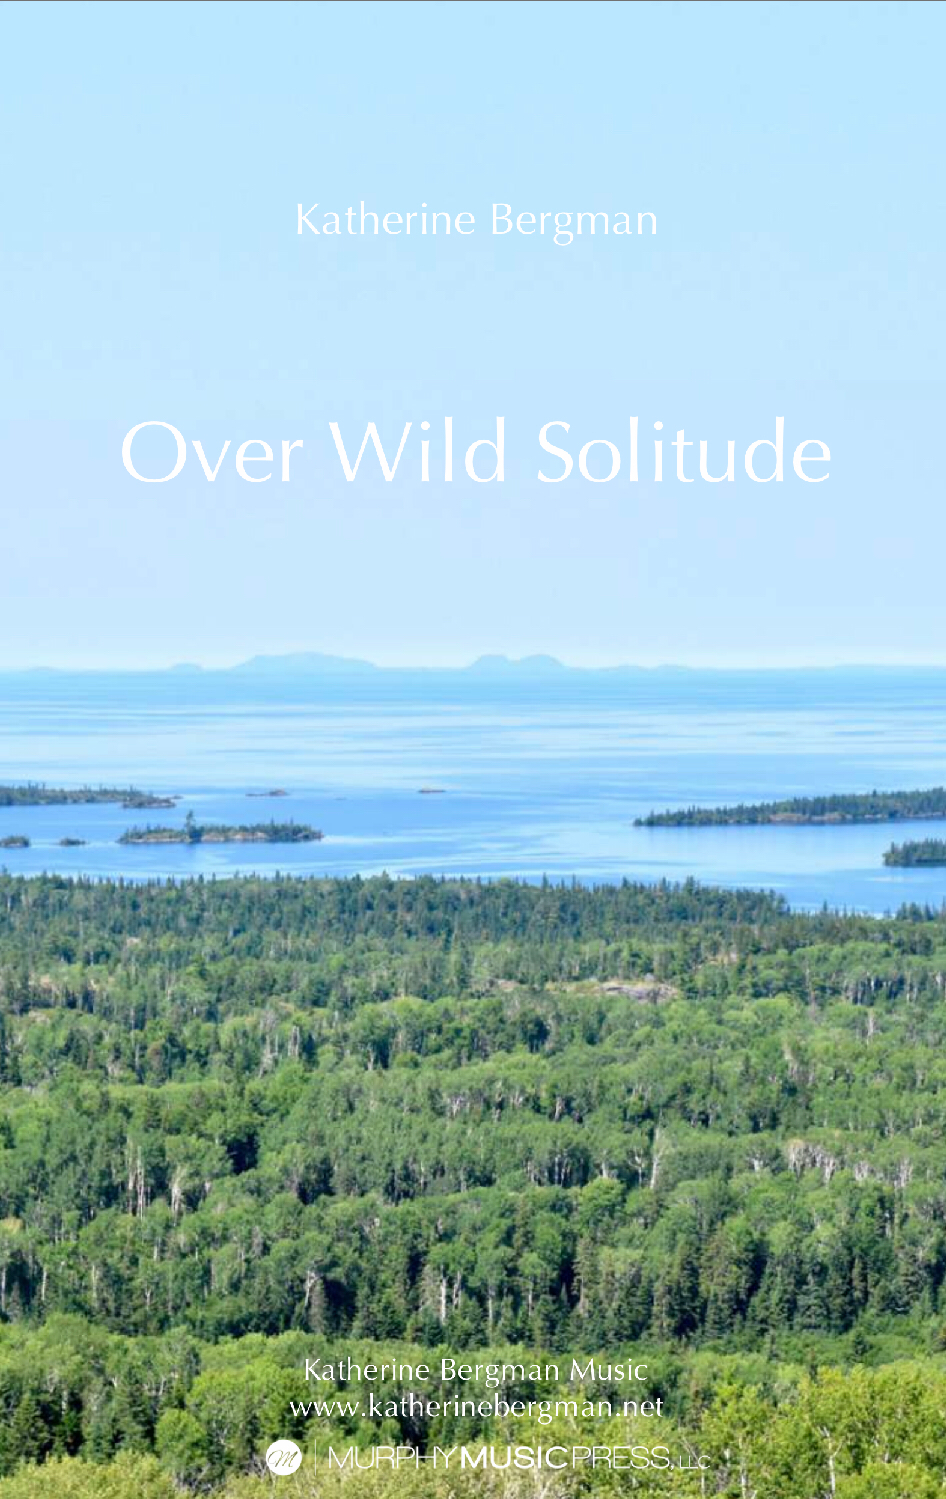 Over Wild Solitude by Katherine Bergman